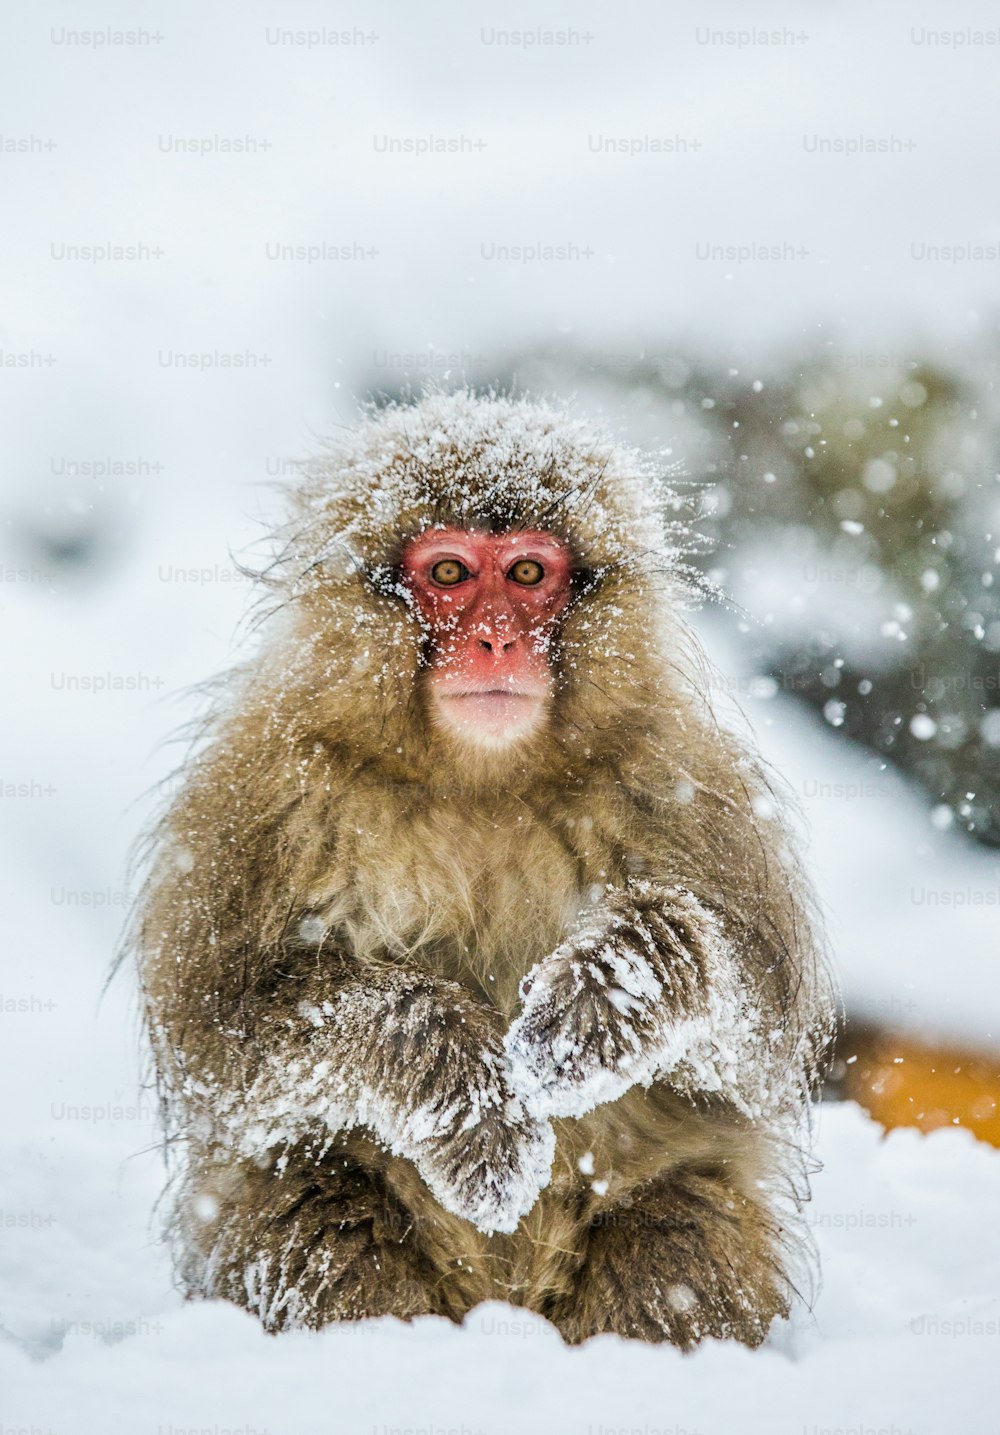 Macaco giapponese seduto nella neve. Giappone. Nagano. Parco delle scimmie di Jigokudani. Un'ottima illustrazione.